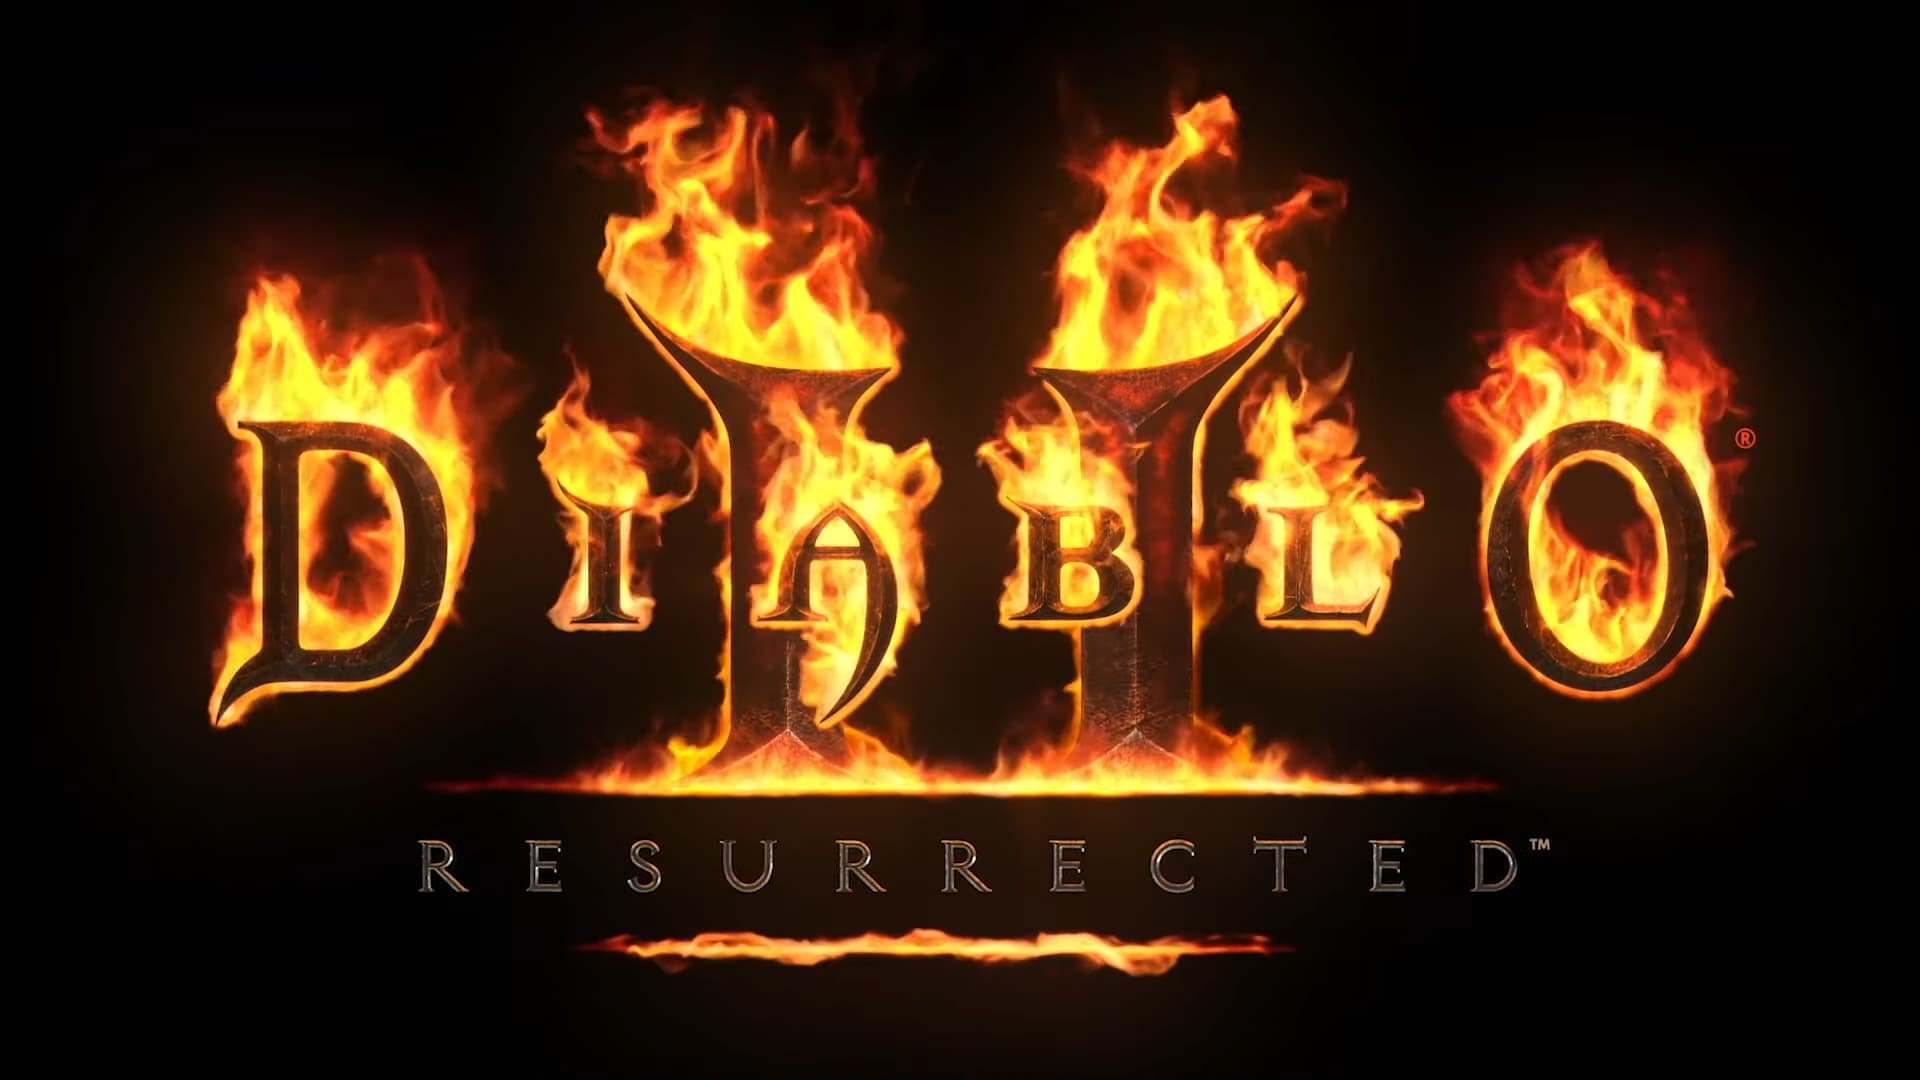 ریمستر Diablo 2 رسما معرفی شد؛ تریلر و تاریخ انتشار